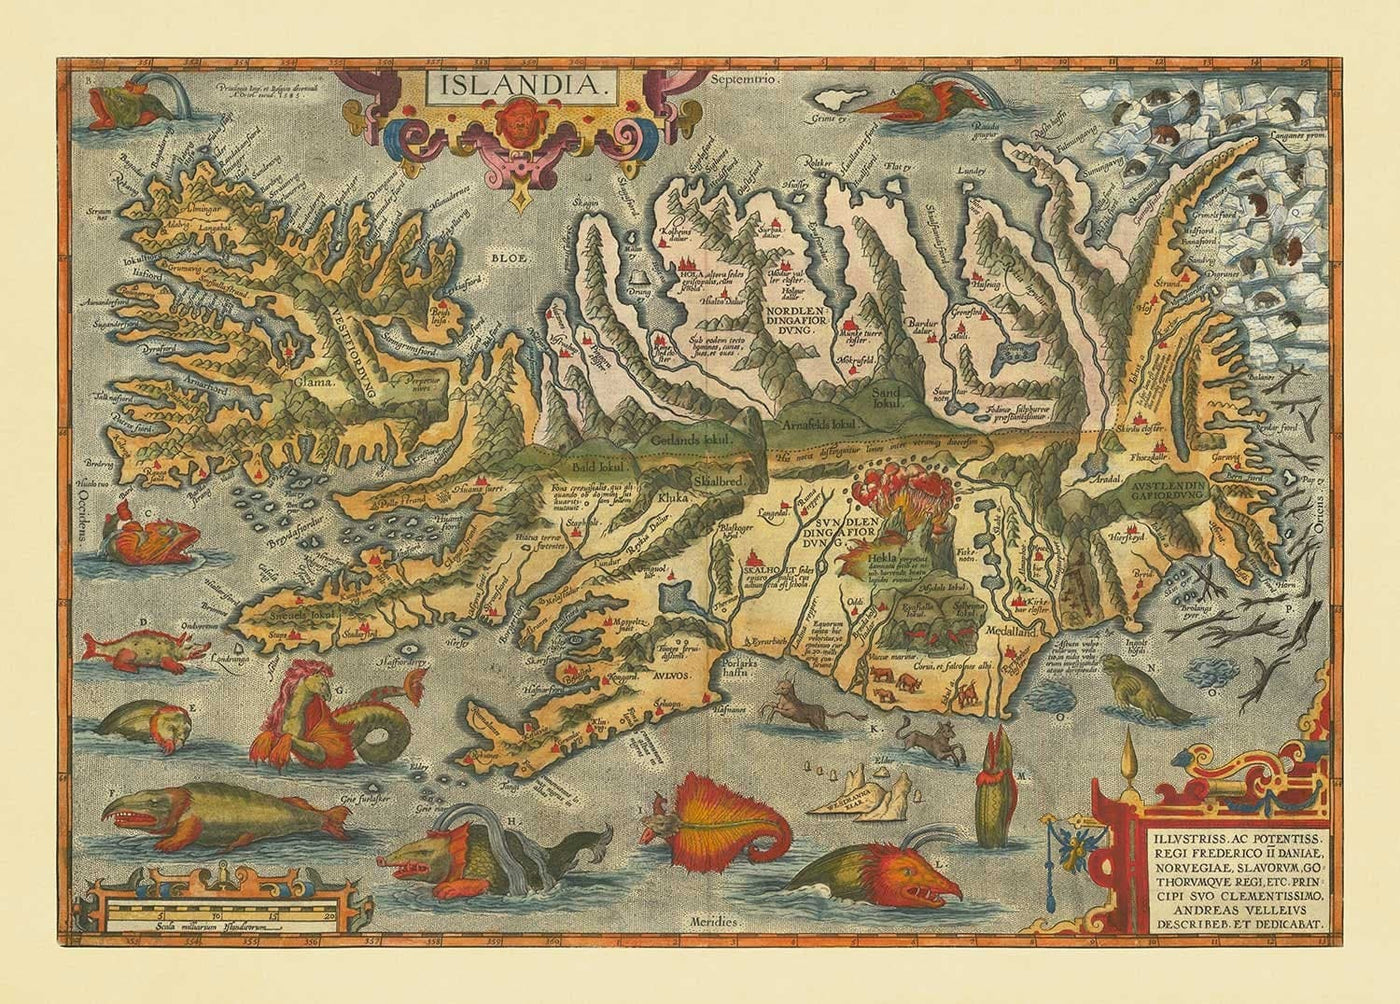 Seltene alte Landkarte von Island von Ortelius, 1603-Reykjavik, Keflavik, Vulkane, Berge, Fjorde, Gletscher, Sea Monsters